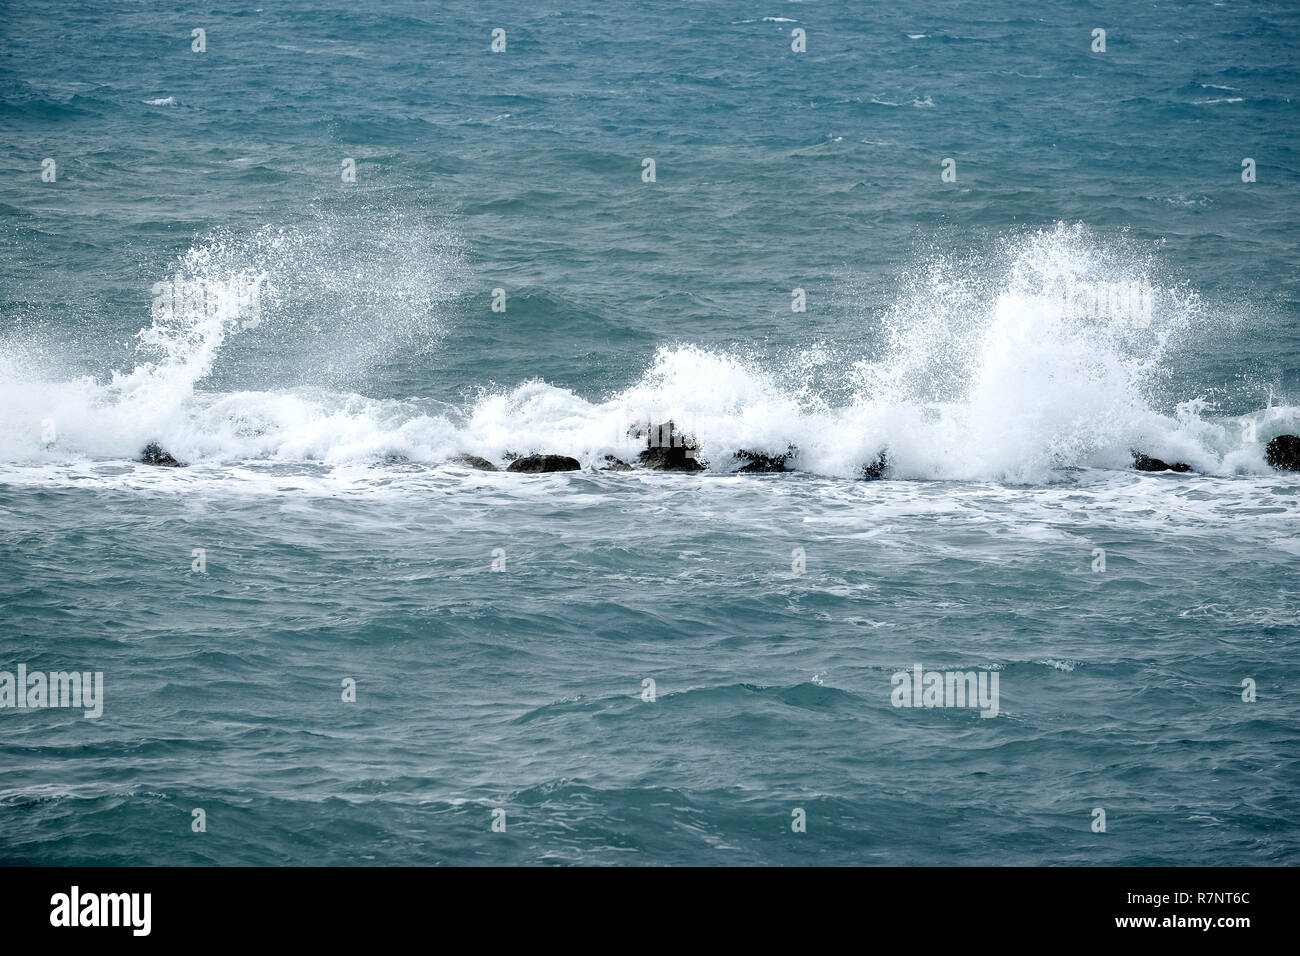 Il paesaggio con le onde del mare gli schizzi di schiuma bianca per volare in alto su windy giorno di estate Foto Stock